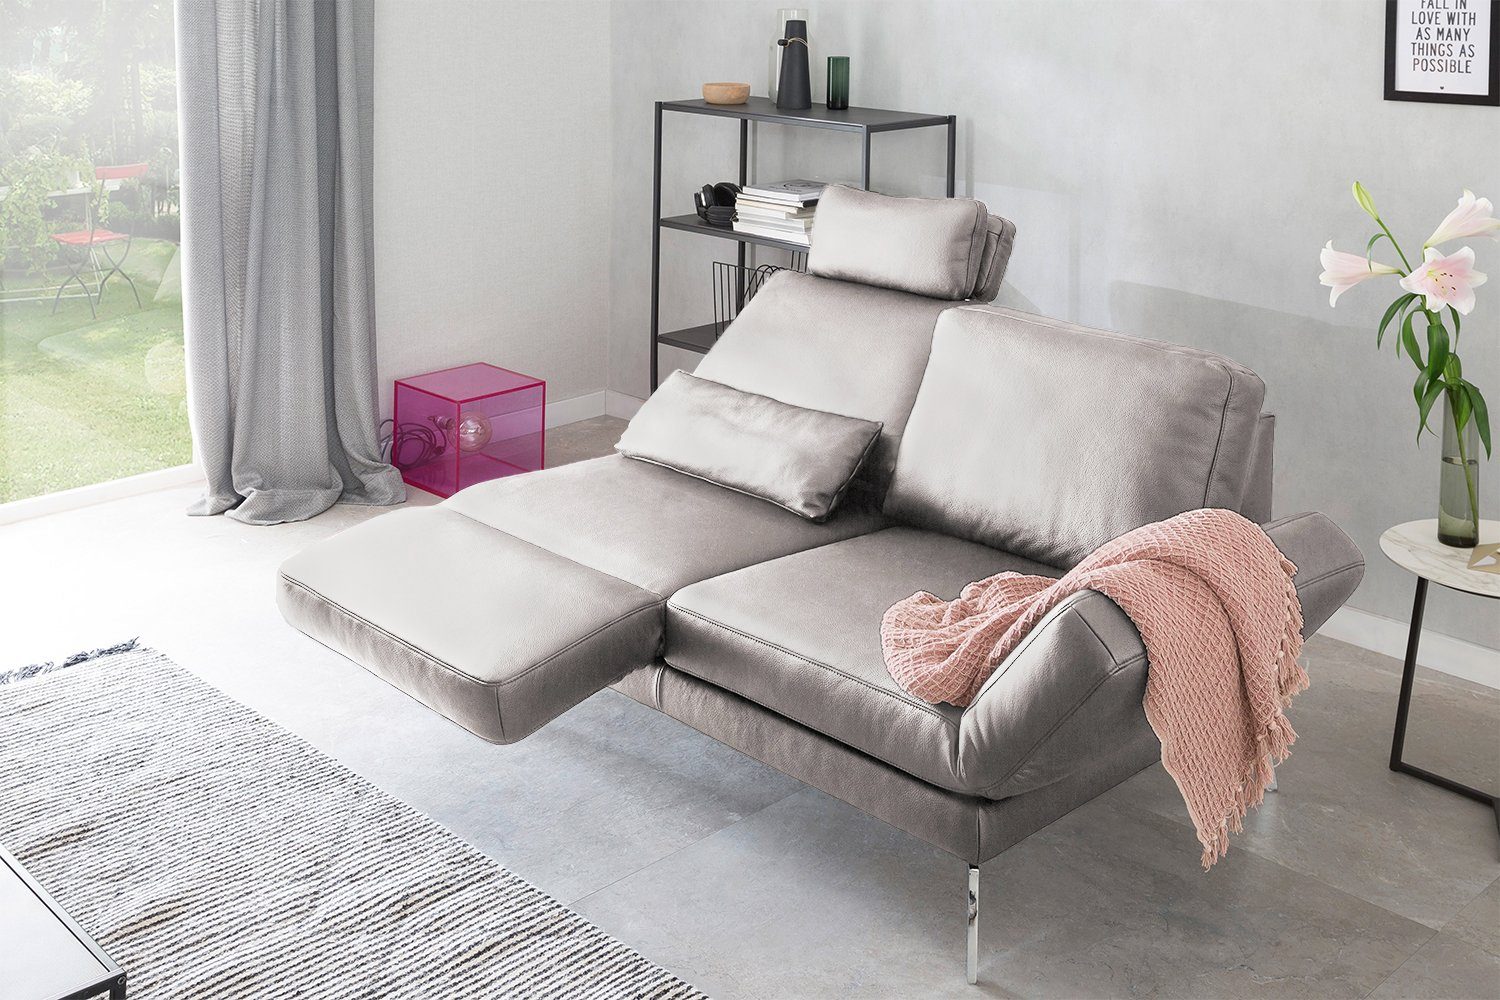 KAWOLA 2-Sitzer Sofa hellgrau HURRICANE, Leder Farben verschiedene